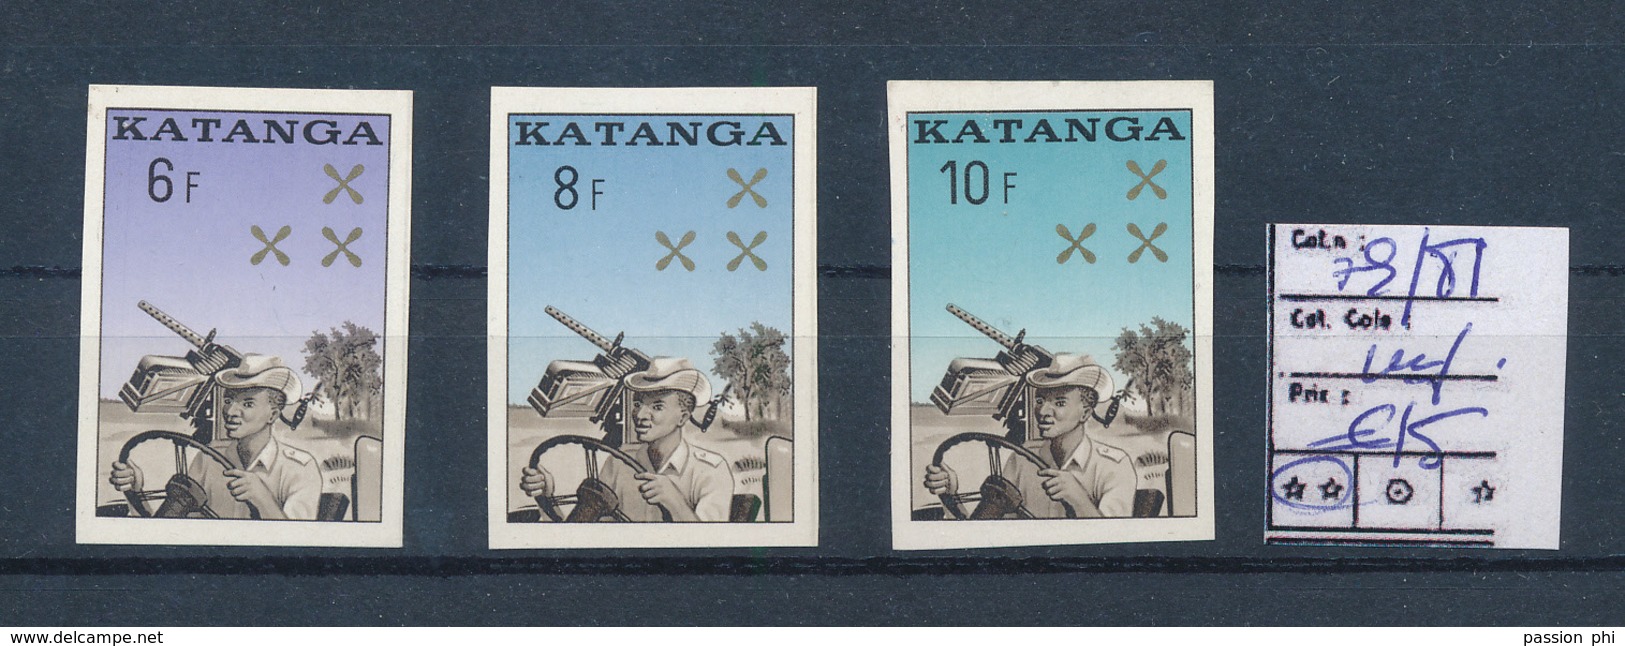 KATANGA GENDARMERIE COB 79/81 IMPERFORATED MNH - Katanga